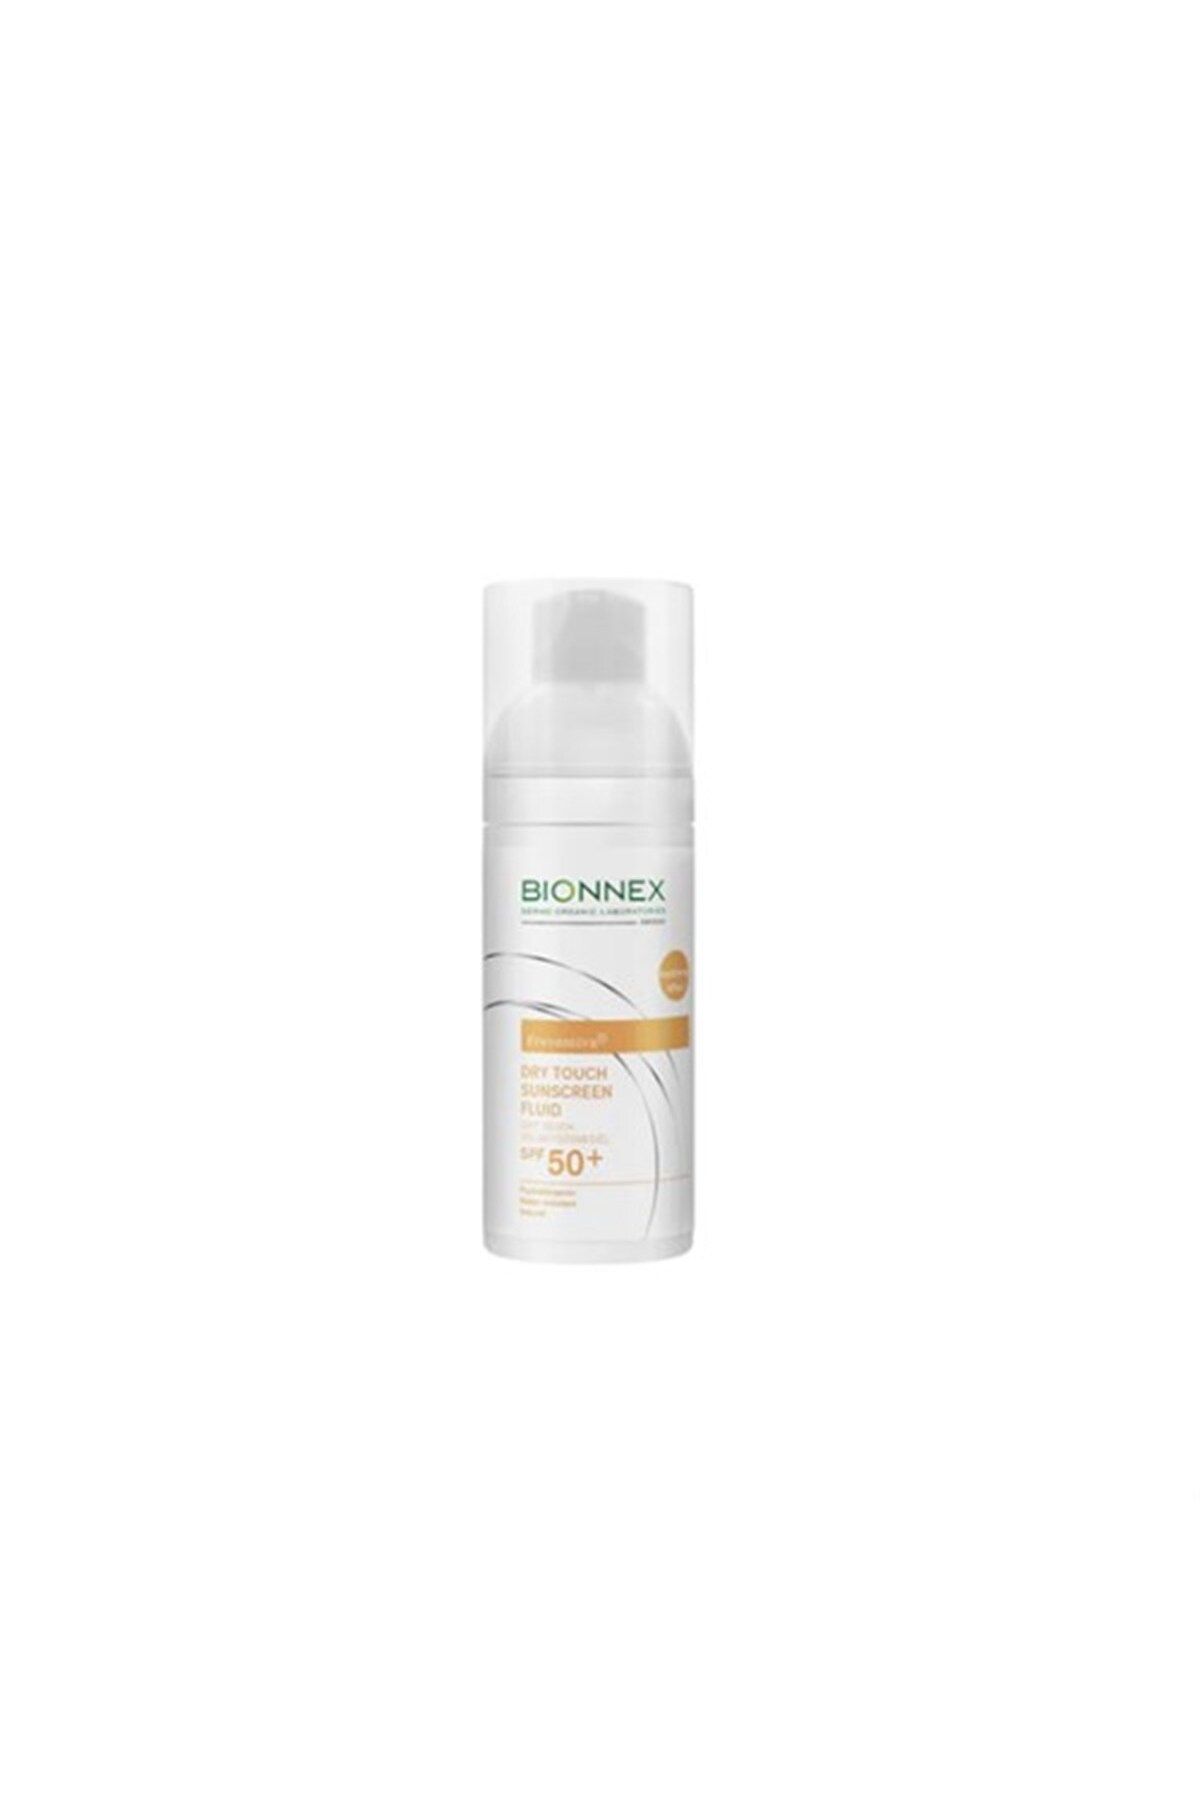 Bionnex Sunscreen Dry Touch Fluid Spf 50 50 ml